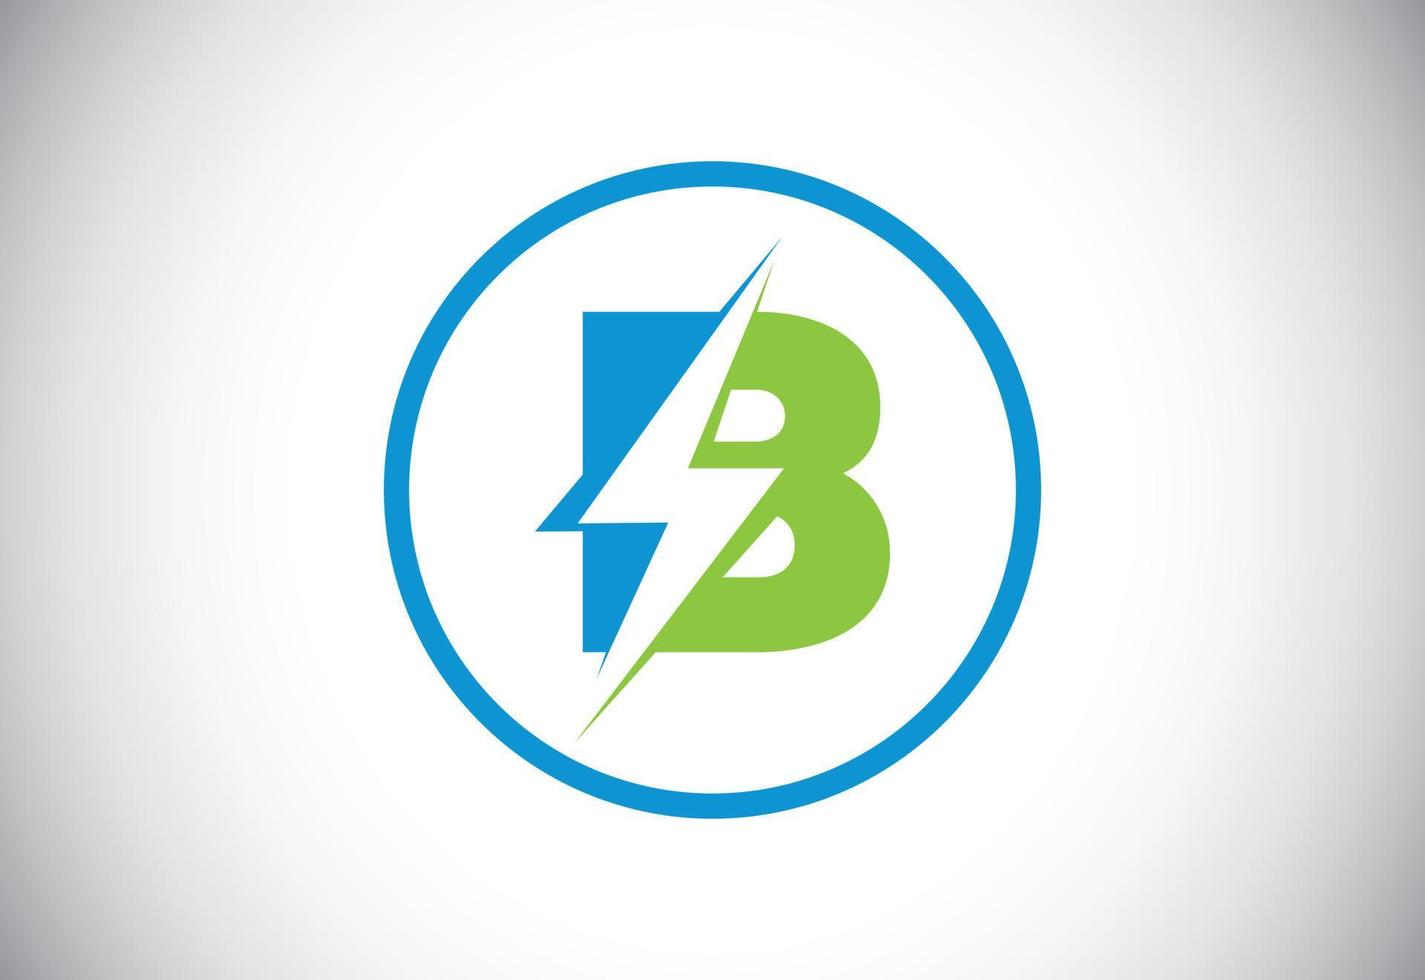 Initial B letter logo design with lighting thunder bolt. Electric bolt letter logo vector